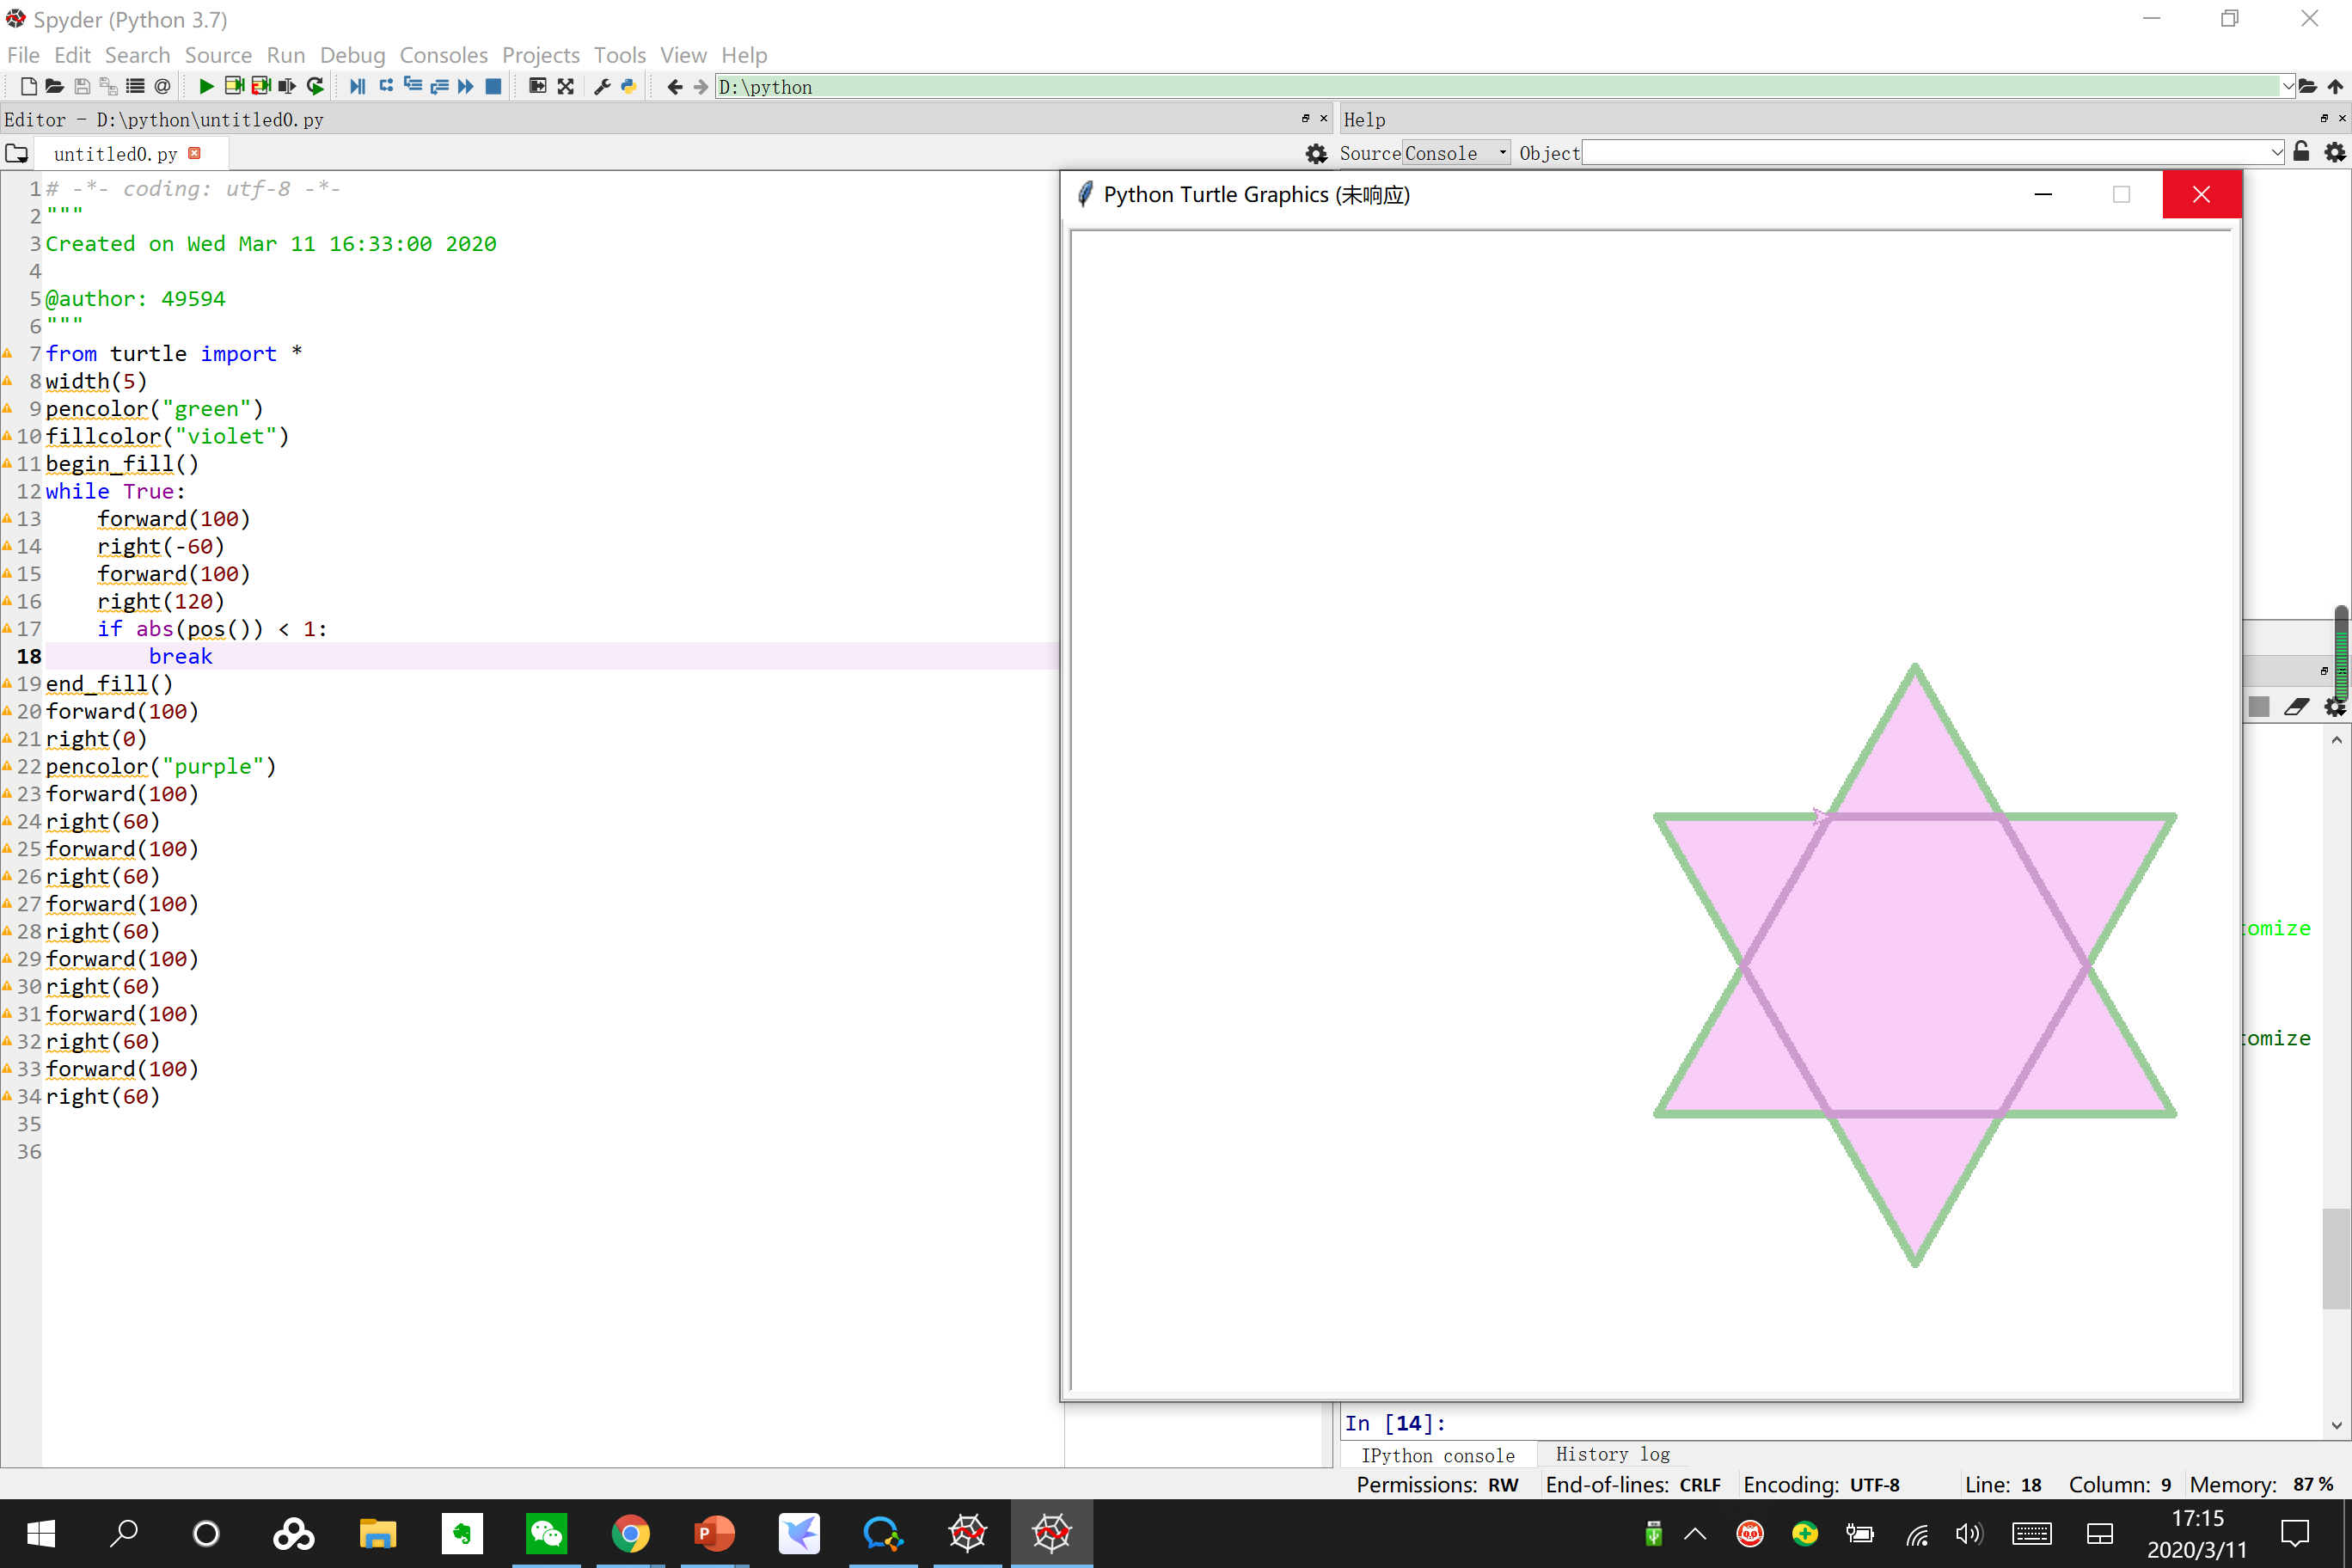 六角形的投射  ‪‬‪‬‪‬‪‬‪‬‮‬‪‬‮‬‪‬‪‬‪‬‪‬‪‬‮‬‫‬‭‬‪‬‪‬‪‬‪‬‪‬‮‬‫‬‫‬‪‬ ‪‬‪‬‪‬‪‬‮‬‭‬‫‬‪‬‪‬‪‬‪‬‪‬‮‬‫‬‫‬‪‬‪‬‪‬‪‬‪‬‮‬‫‬‮‬  描述 使用龟库绘制一个六角形，效果如下